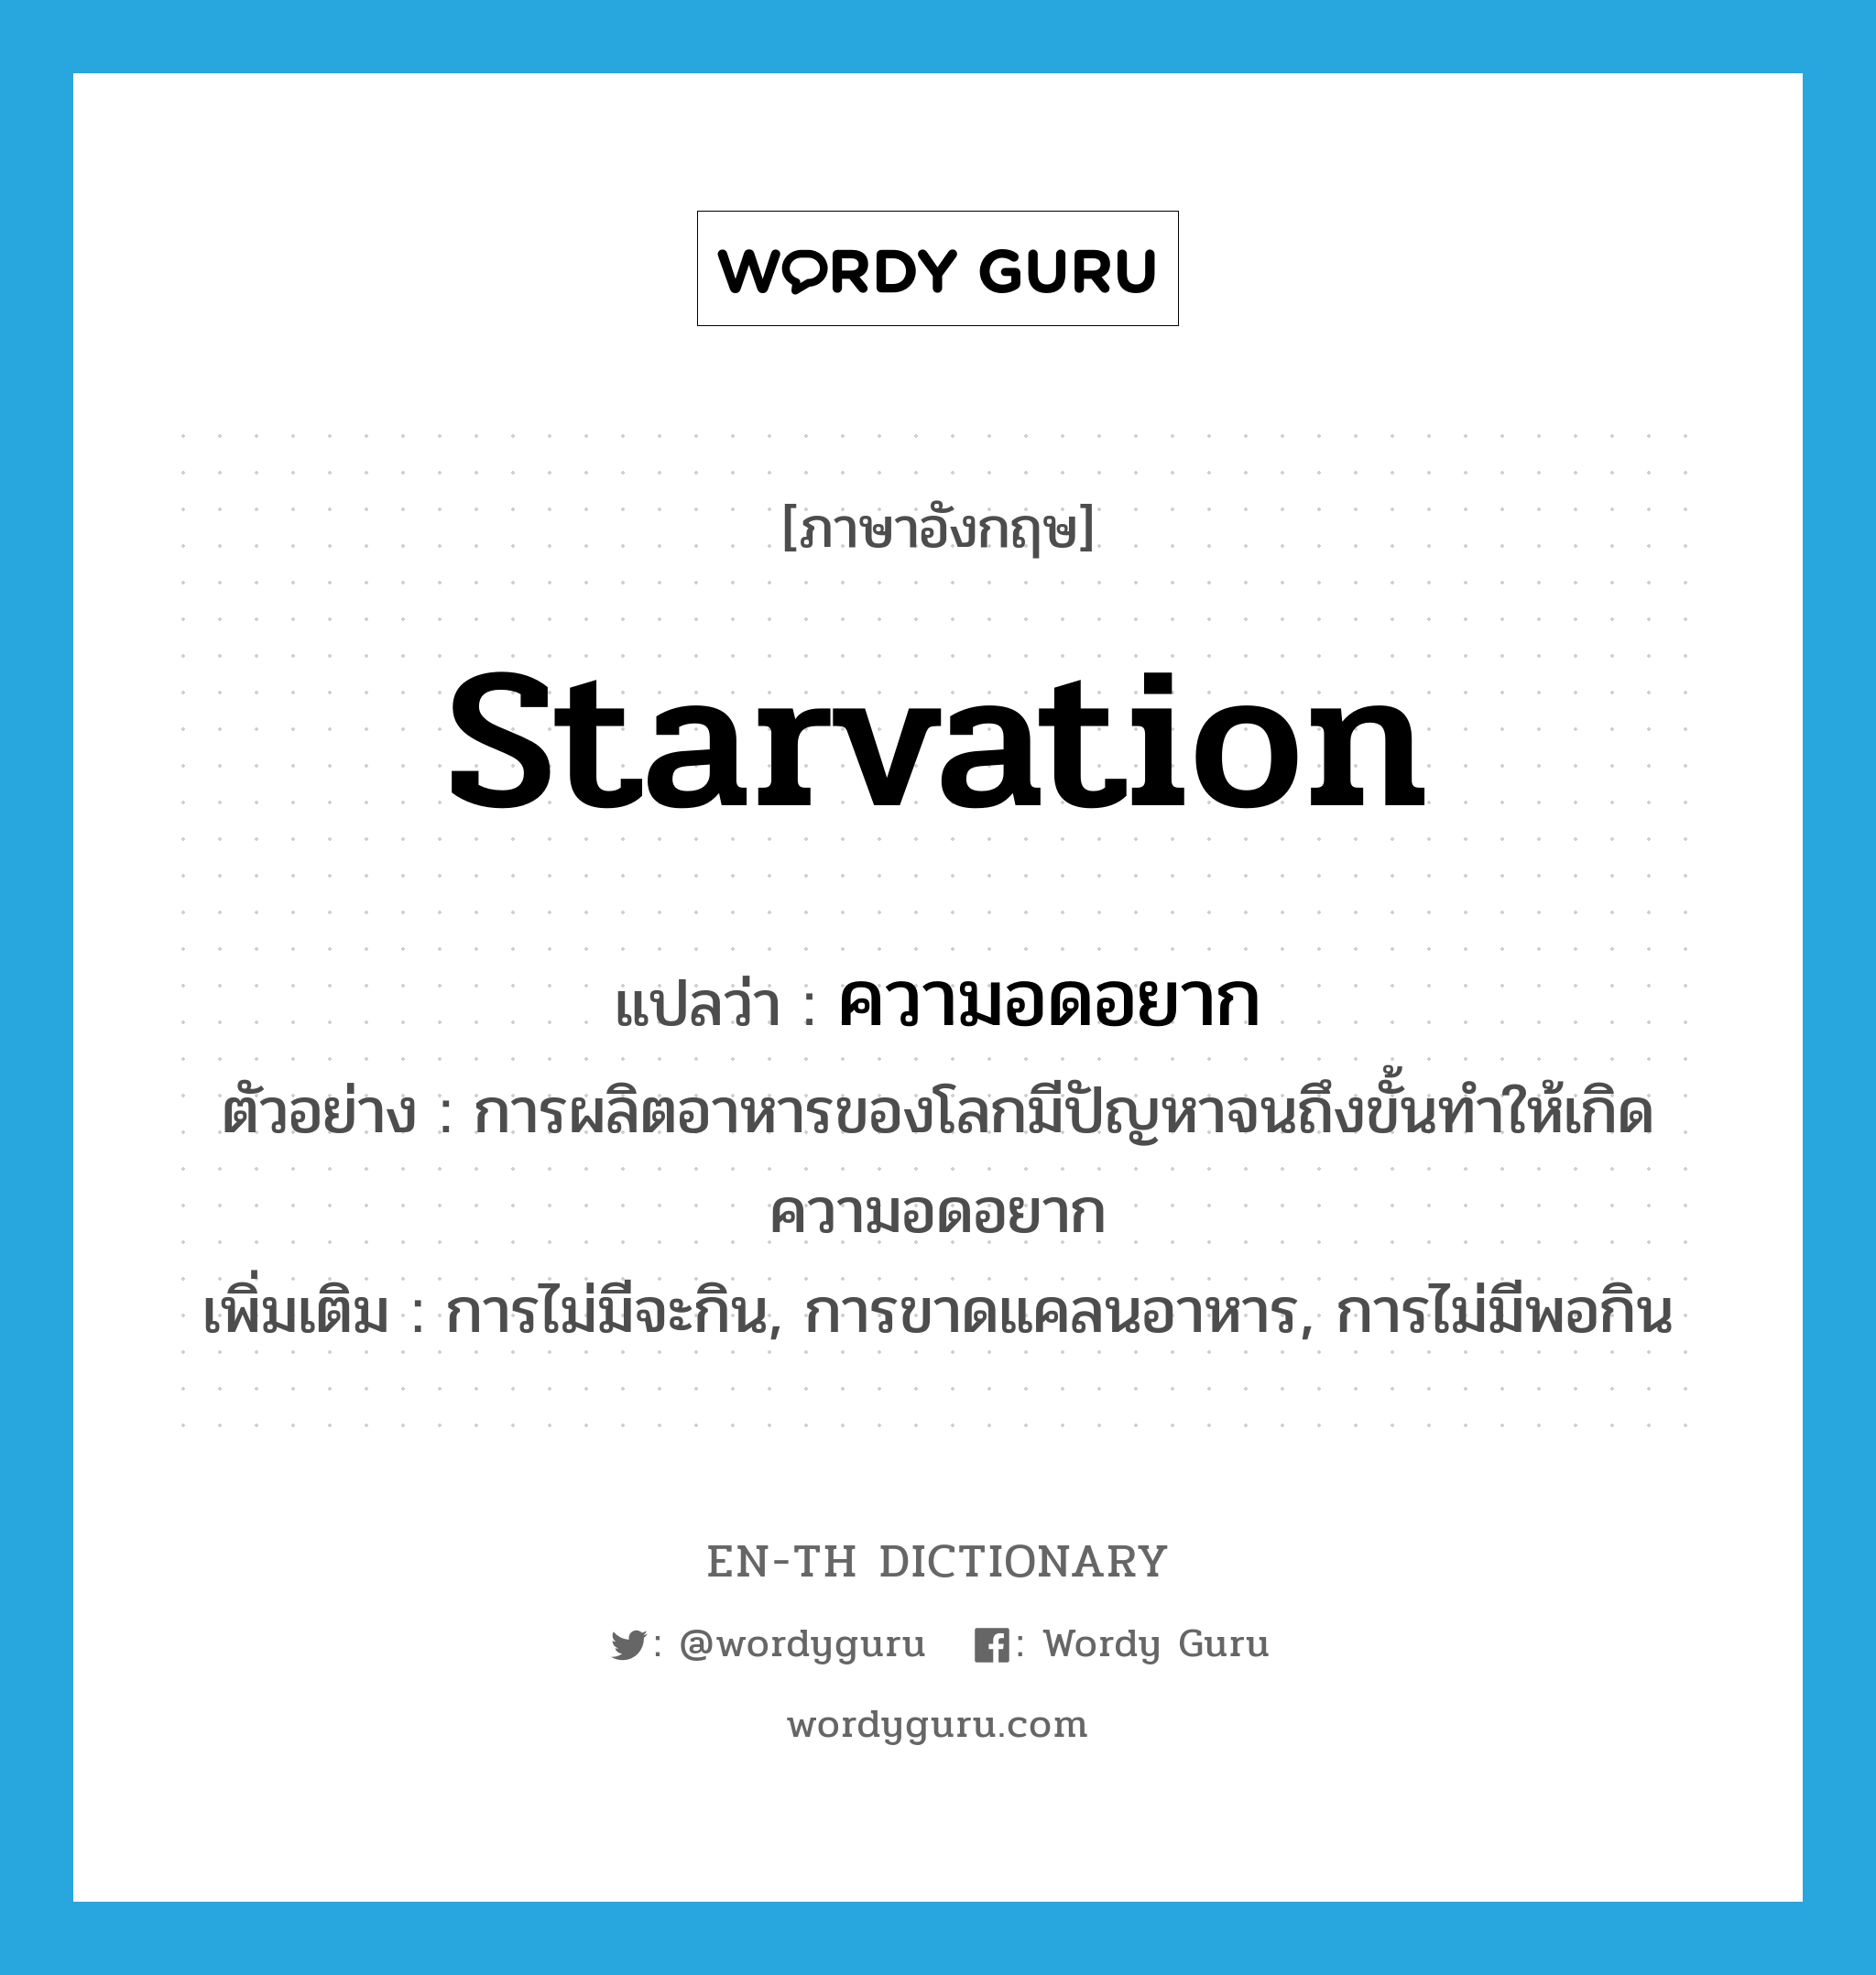 starvation แปลว่า?, คำศัพท์ภาษาอังกฤษ starvation แปลว่า ความอดอยาก ประเภท N ตัวอย่าง การผลิตอาหารของโลกมีปัญหาจนถึงขั้นทำให้เกิดความอดอยาก เพิ่มเติม การไม่มีจะกิน, การขาดแคลนอาหาร, การไม่มีพอกิน หมวด N